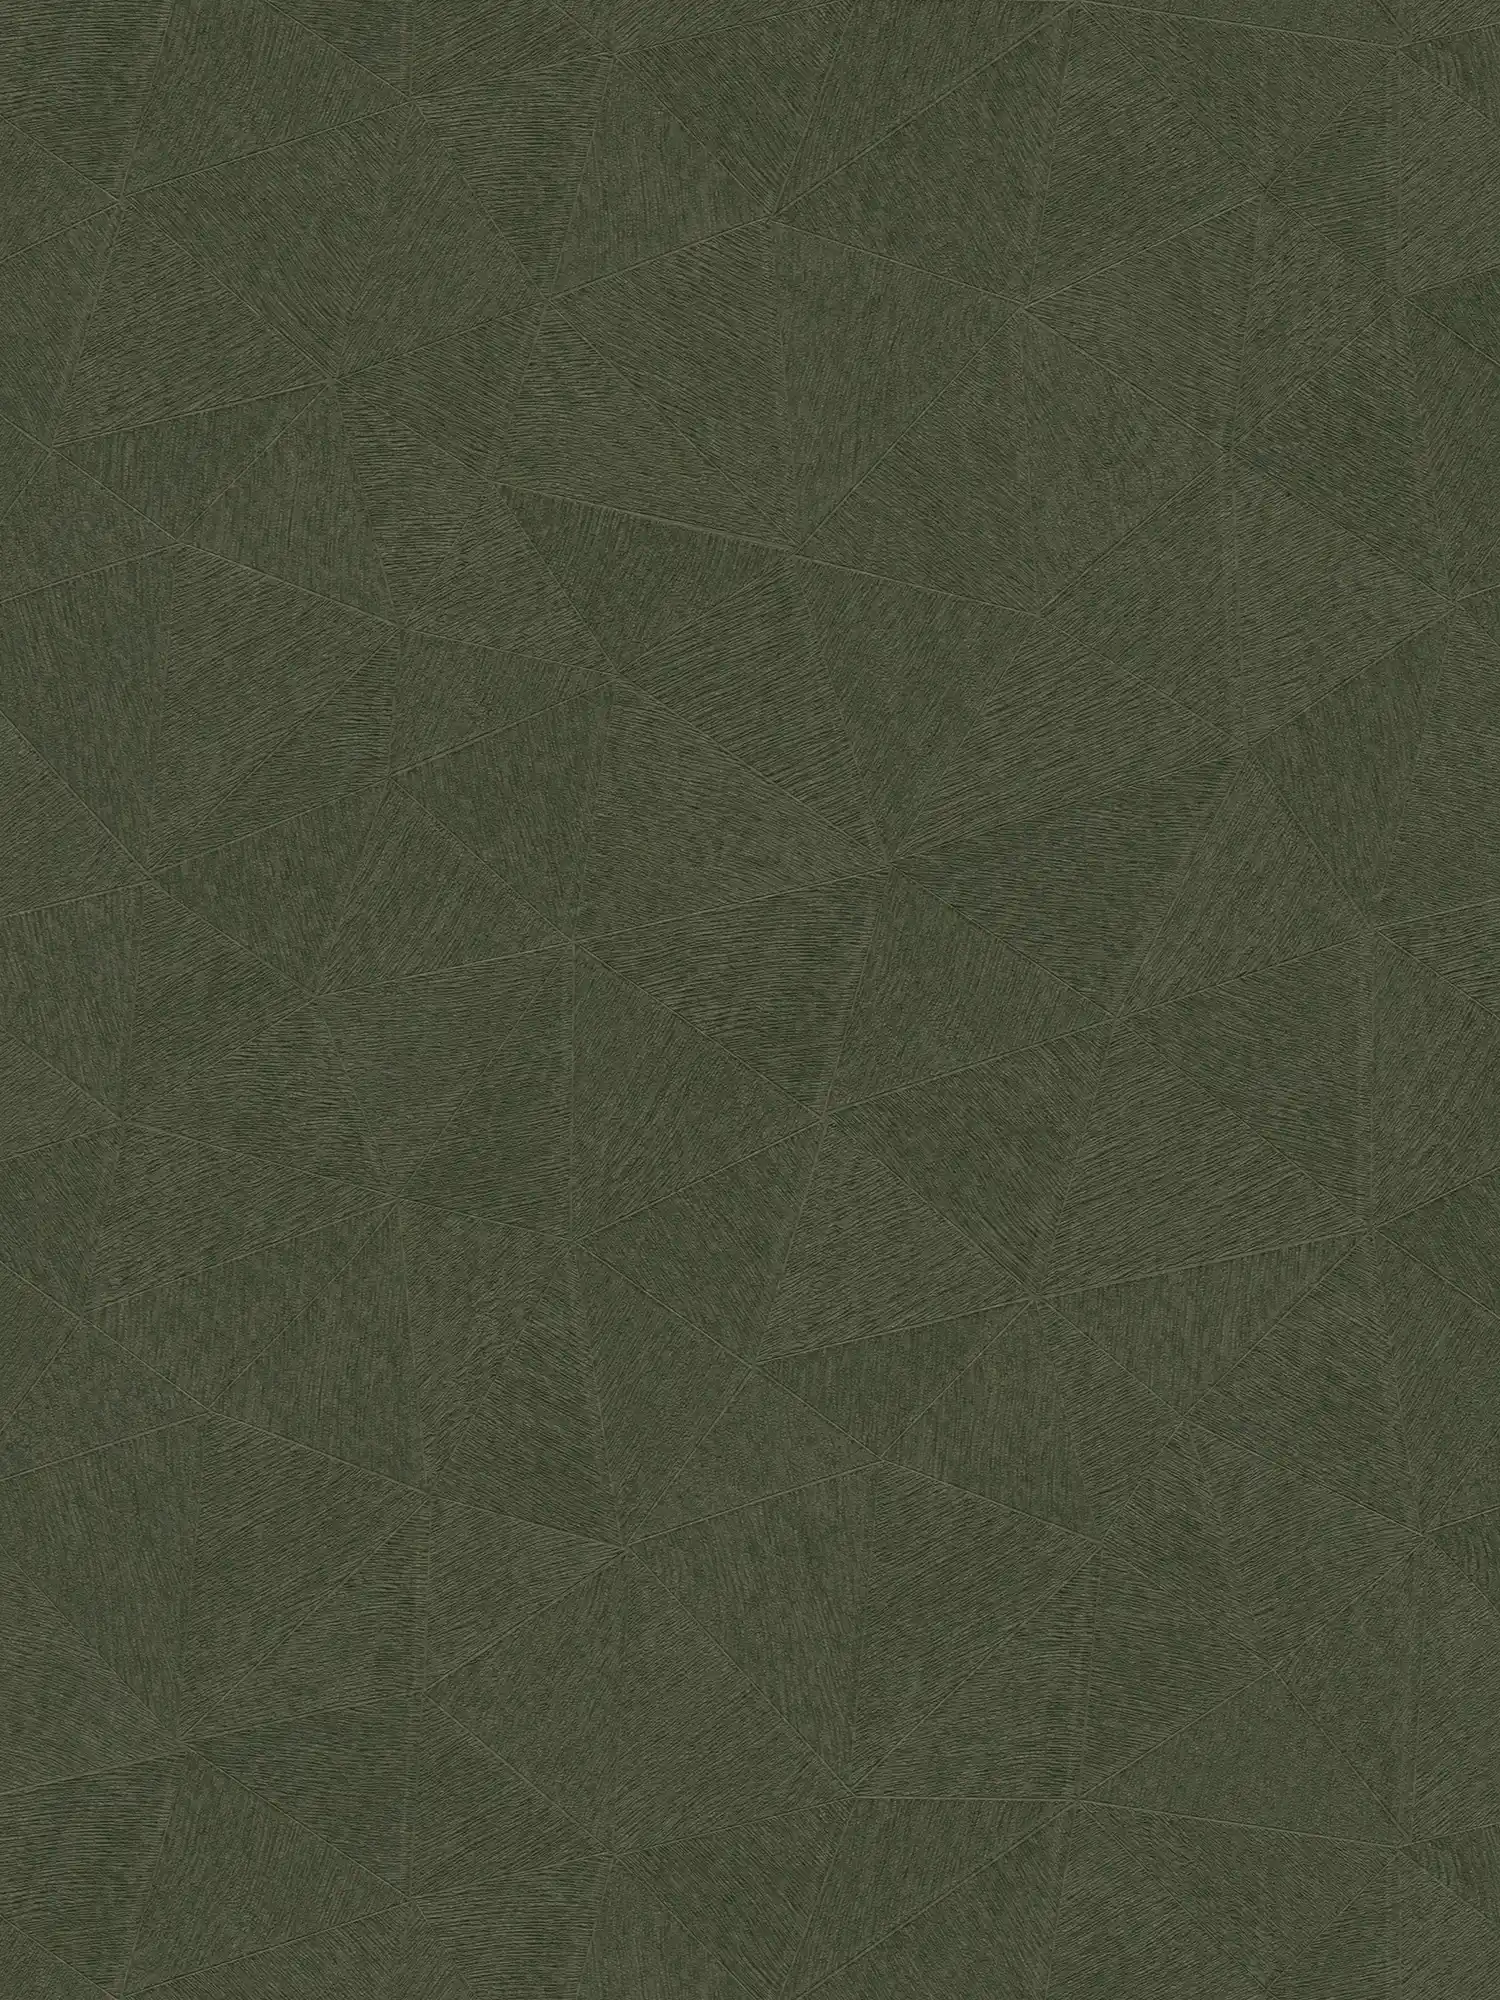 Vliestapete mit dezenten grafischen Muster – Grün
